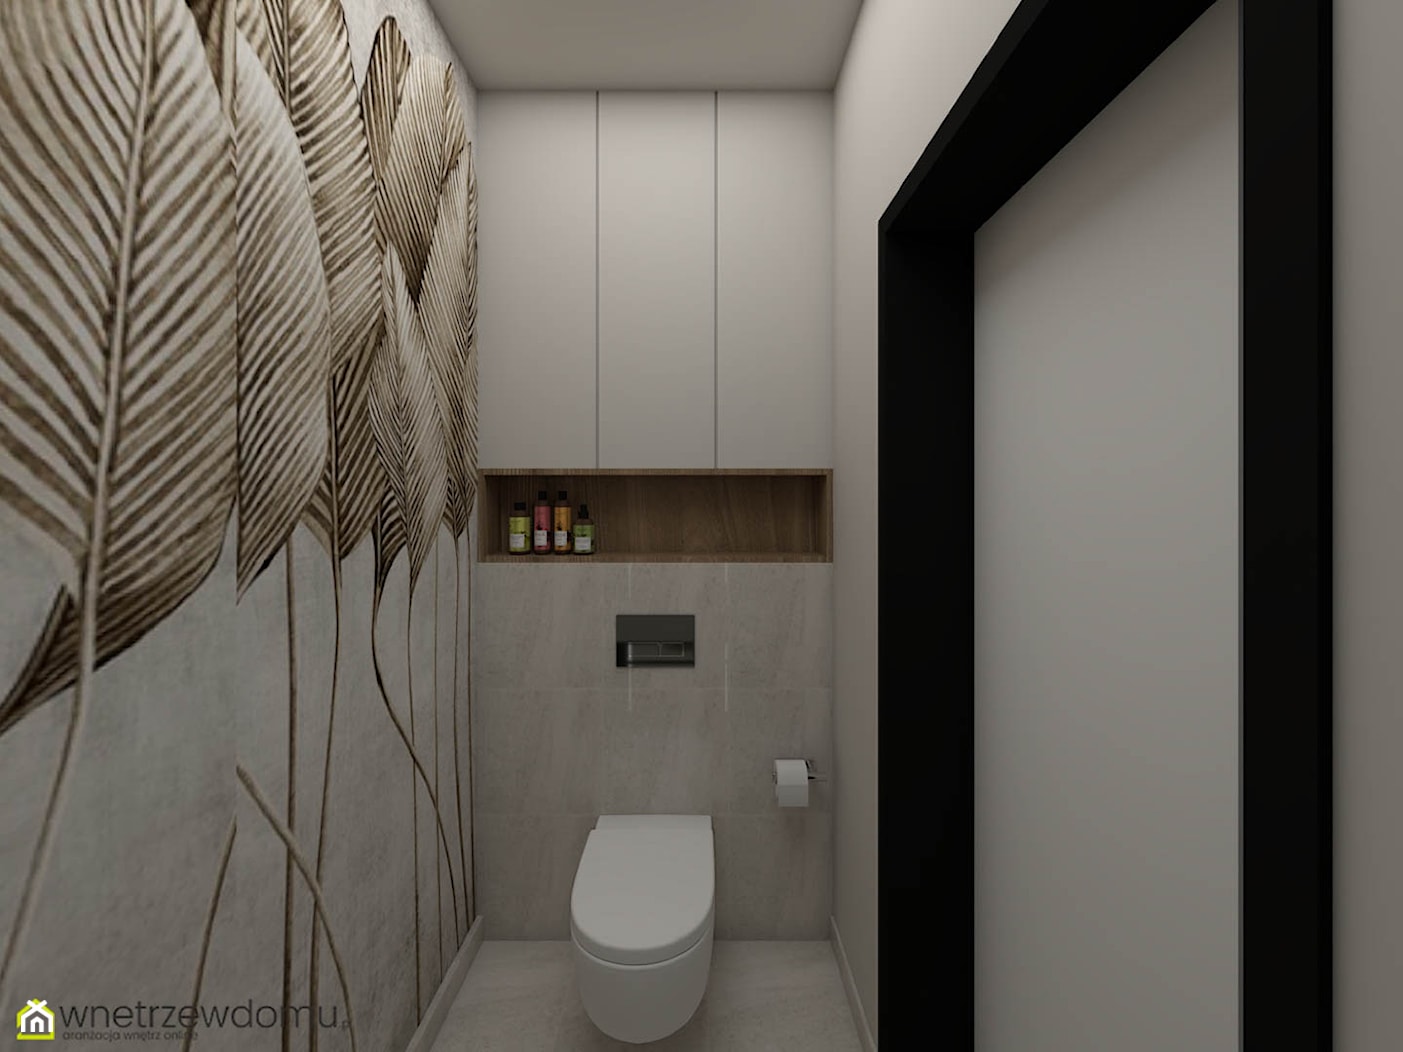 Toaleta ze stylowym liściastym motywem - zdjęcie od wnetrzewdomu - Homebook